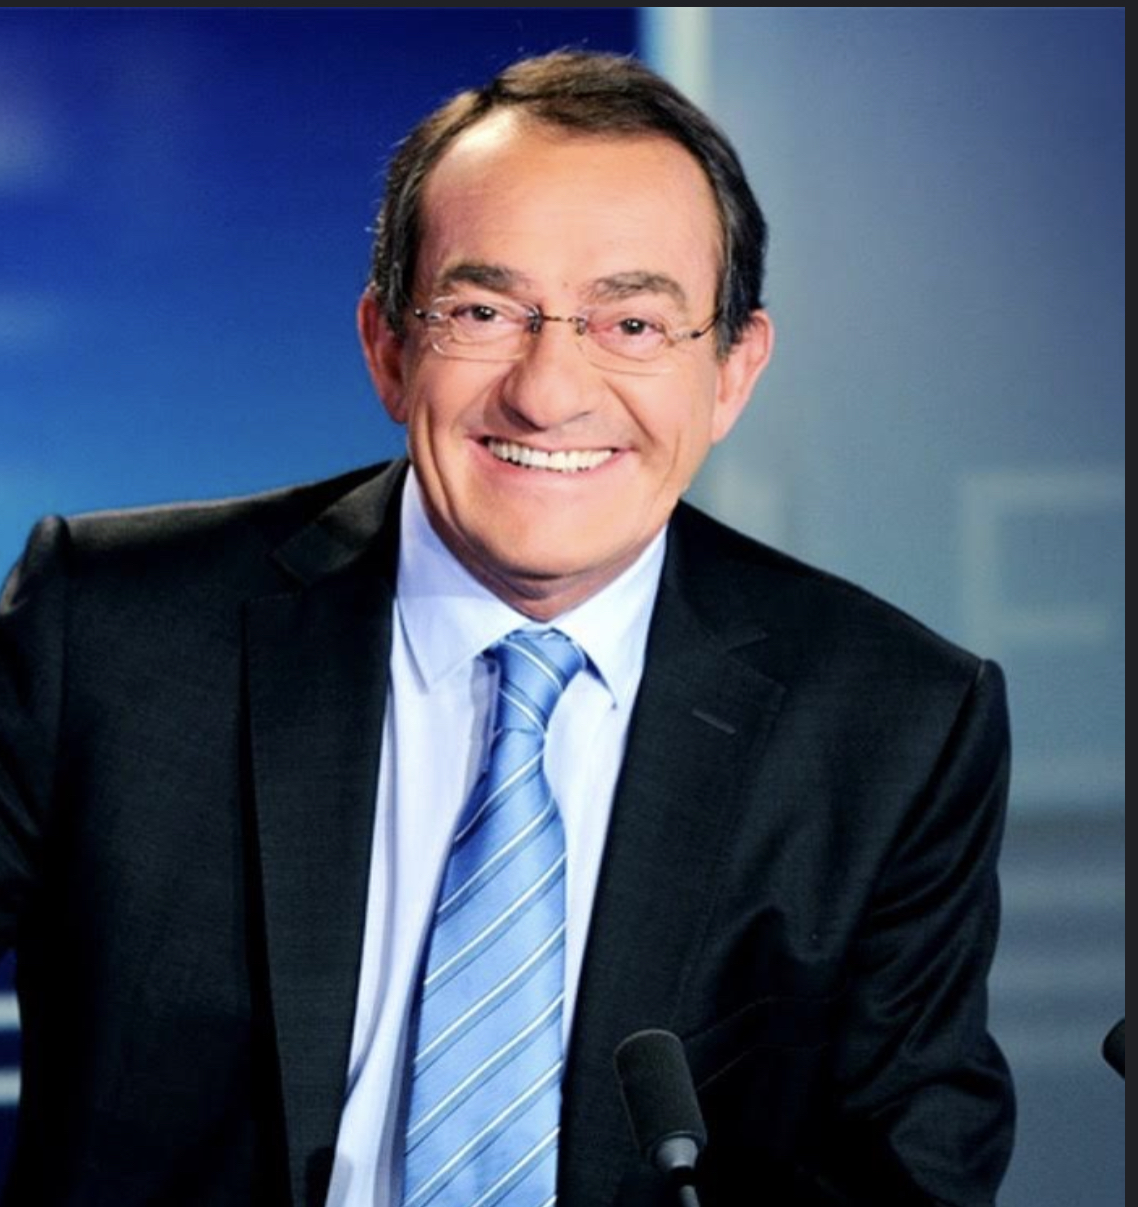 TF1 : Le dernier JT de Pernaut, ce vendredi, après 33 ans de journaux télévisés.